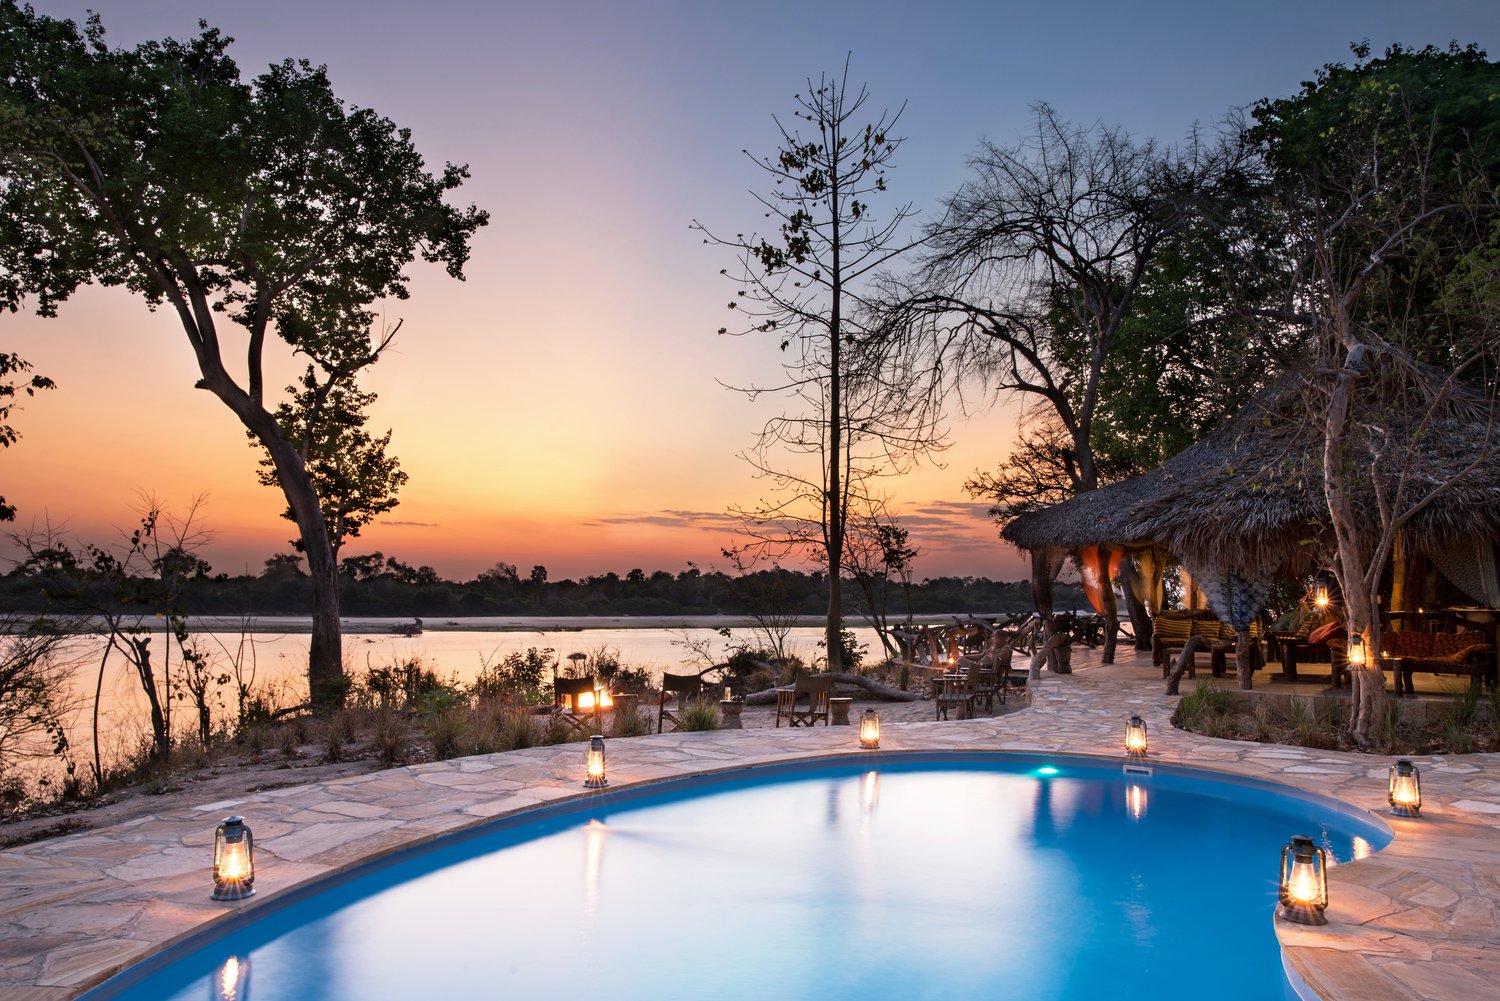 River camp. Ривер Кемп. Отель в Танзании с бассейном и дикими животными. Dunton River Camp Kristey.